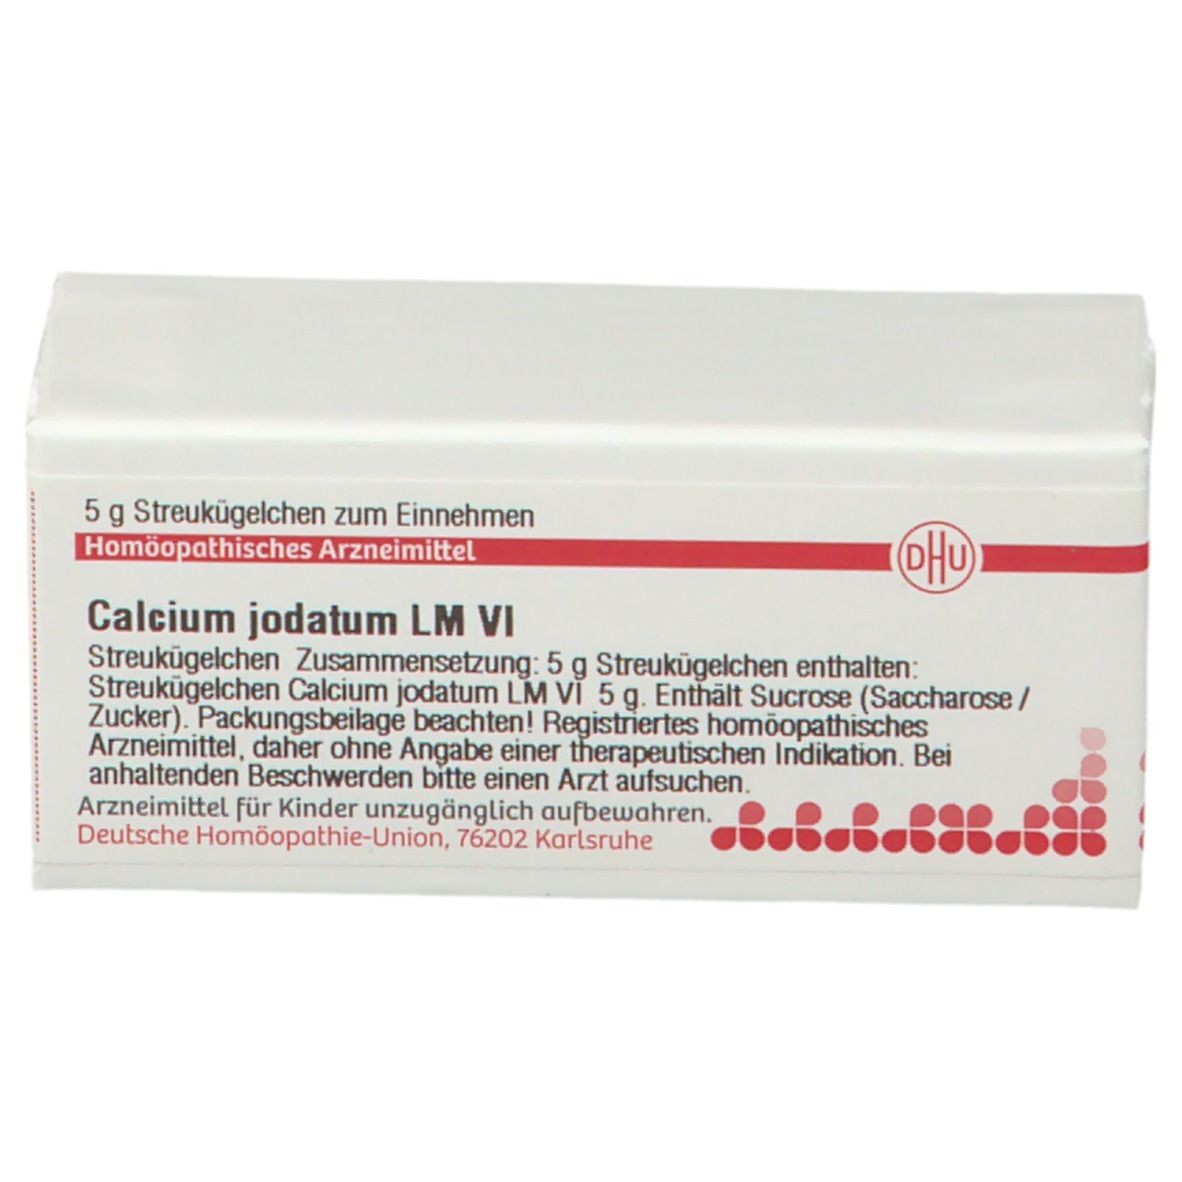 DHU Calcium Jodatum LM VI